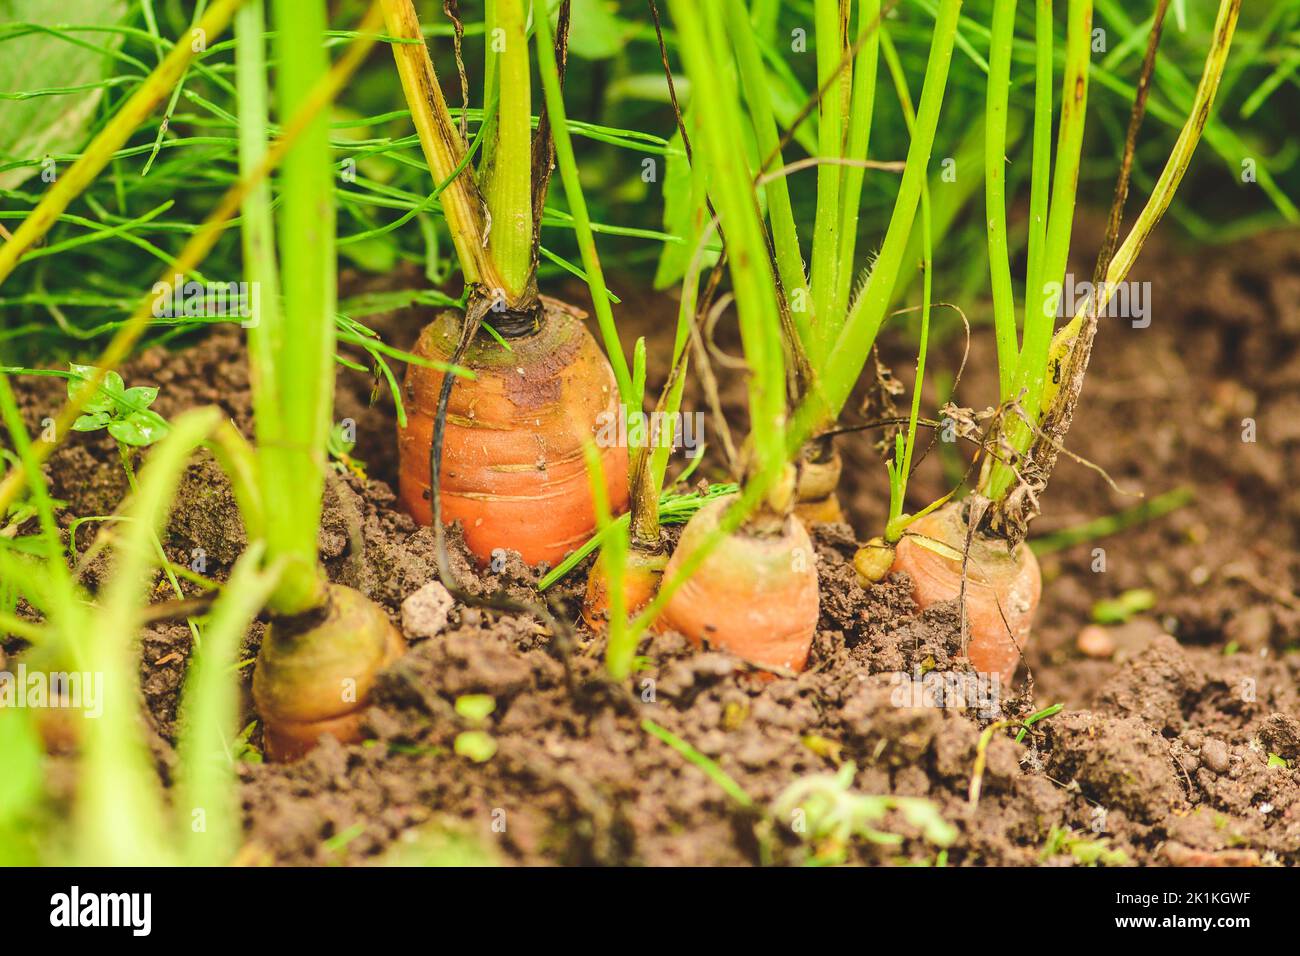 Carote di arancio fresche mature appena raccolte dal terreno nelle mani di una ragazza tra erba verde. Concetto di agricoltura biologica, bio-prodotto, bio-eco Foto Stock